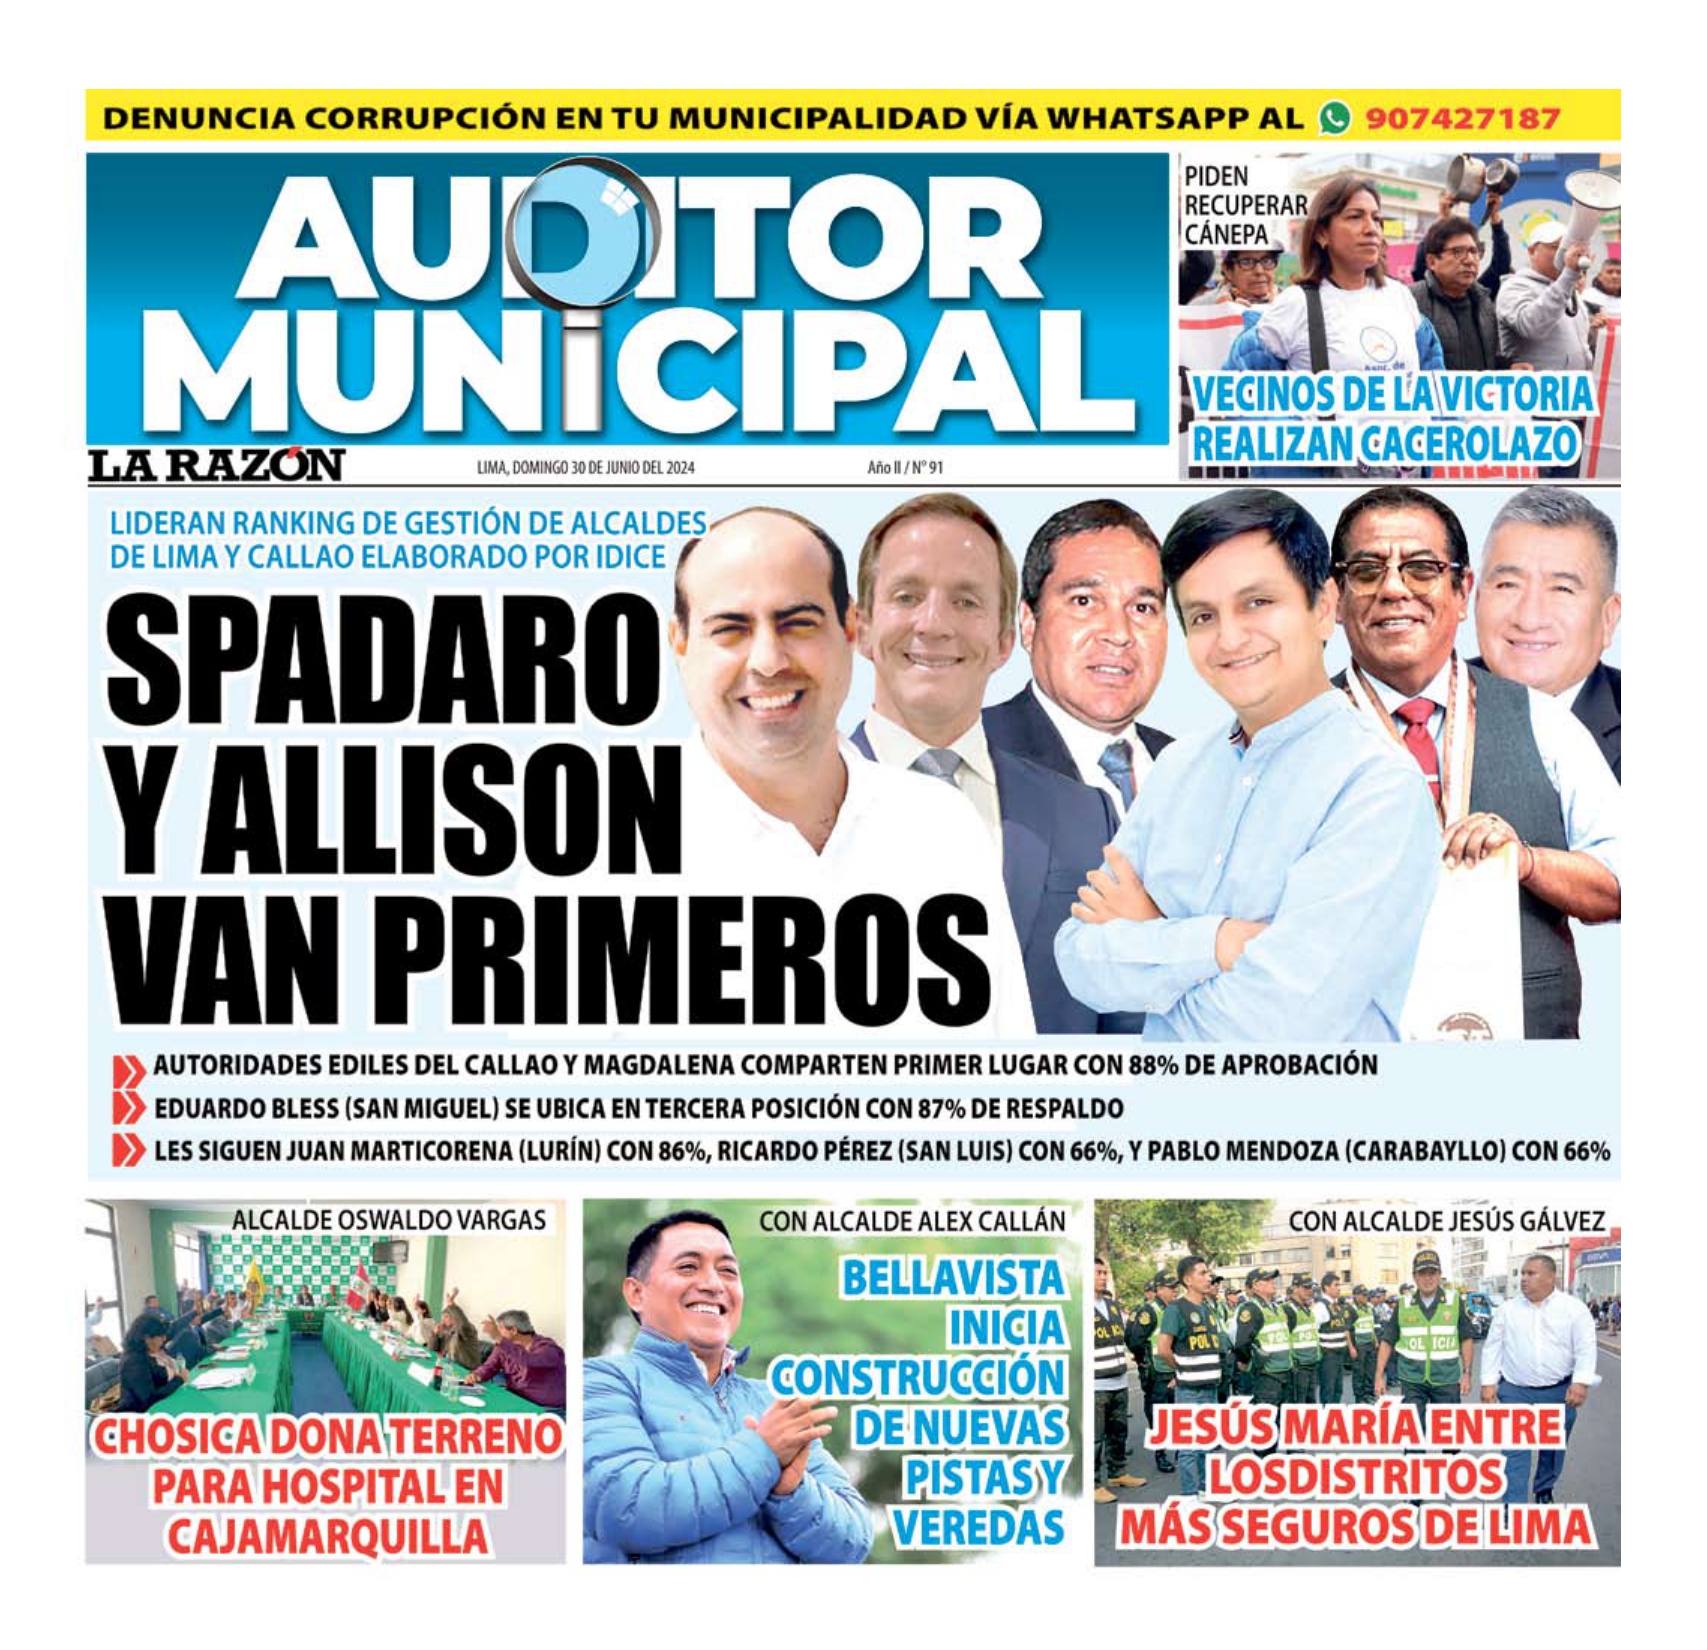 Auditor Municipal: Ranking de gestión de alcaldes de Lima y Callao